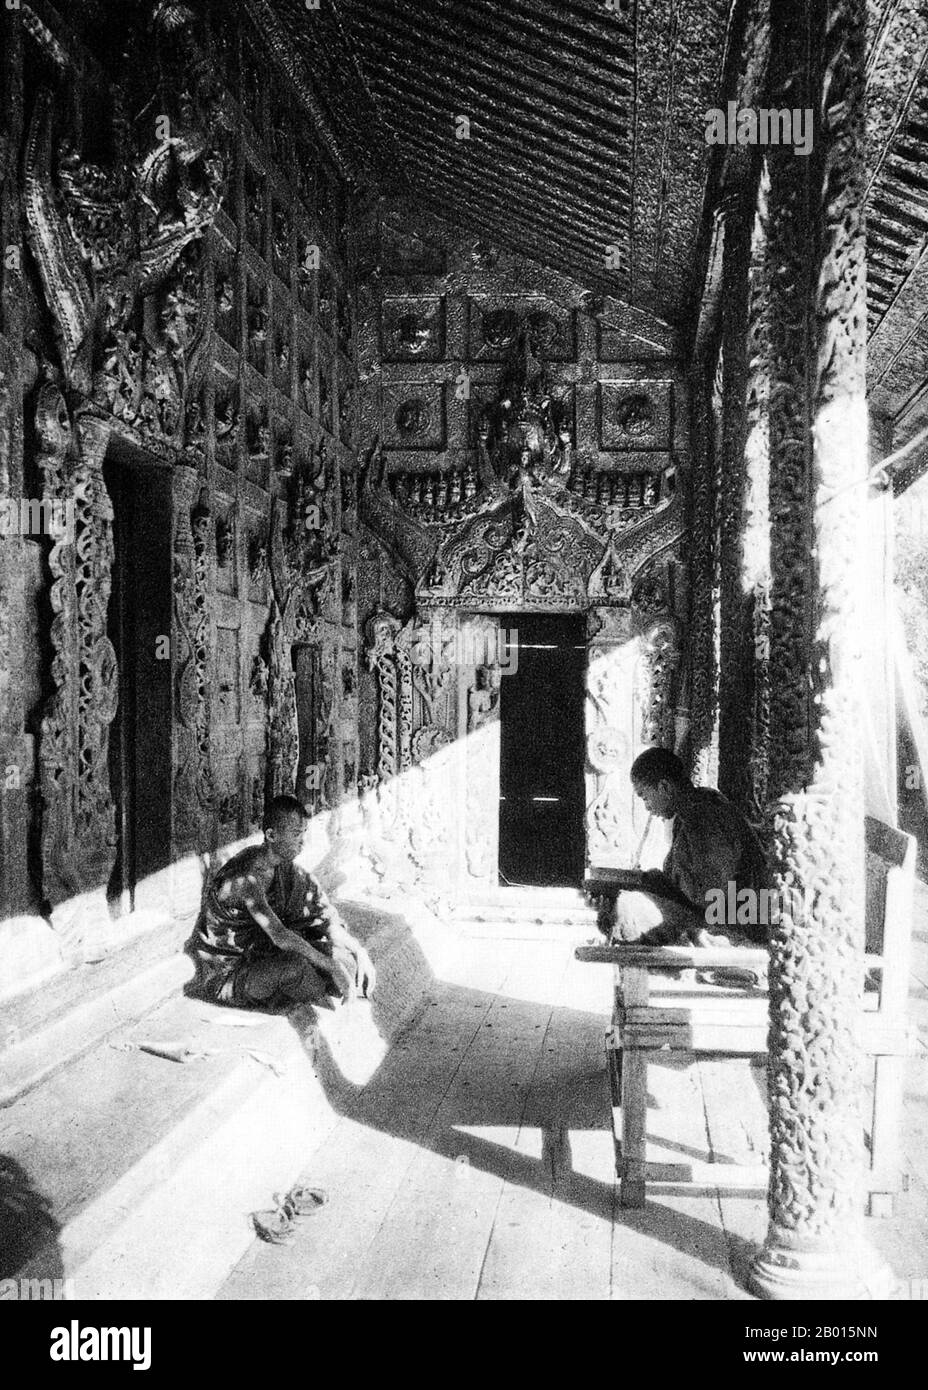 Burma/Myanmar: Ein buddhistischer Mönch unterrichtet seinen Schüler im Goldenen Kloster der Königin im Mandalay Palace, c. 1920er Jahre. Das Goldene Kloster der Königin wurde 1885 auf Befehl von Königin Supayalat erbaut. Es war kaum abgeschlossen, als sie nach Indien mit ihrem Mann Thibaw, dem letzten König von Burma (r. 1878-1885), nach der Annexion Oberburmas durch das Britische Reich. Das jetzt zerstörte Kloster befand sich auf dem Gelände des Mandalay Palace und war ein prachtvolles Holzgebäude, das reich mit verzierten Holzschnitzereien und verspiegelten Glasmosaiken dekoriert war. Stockfoto